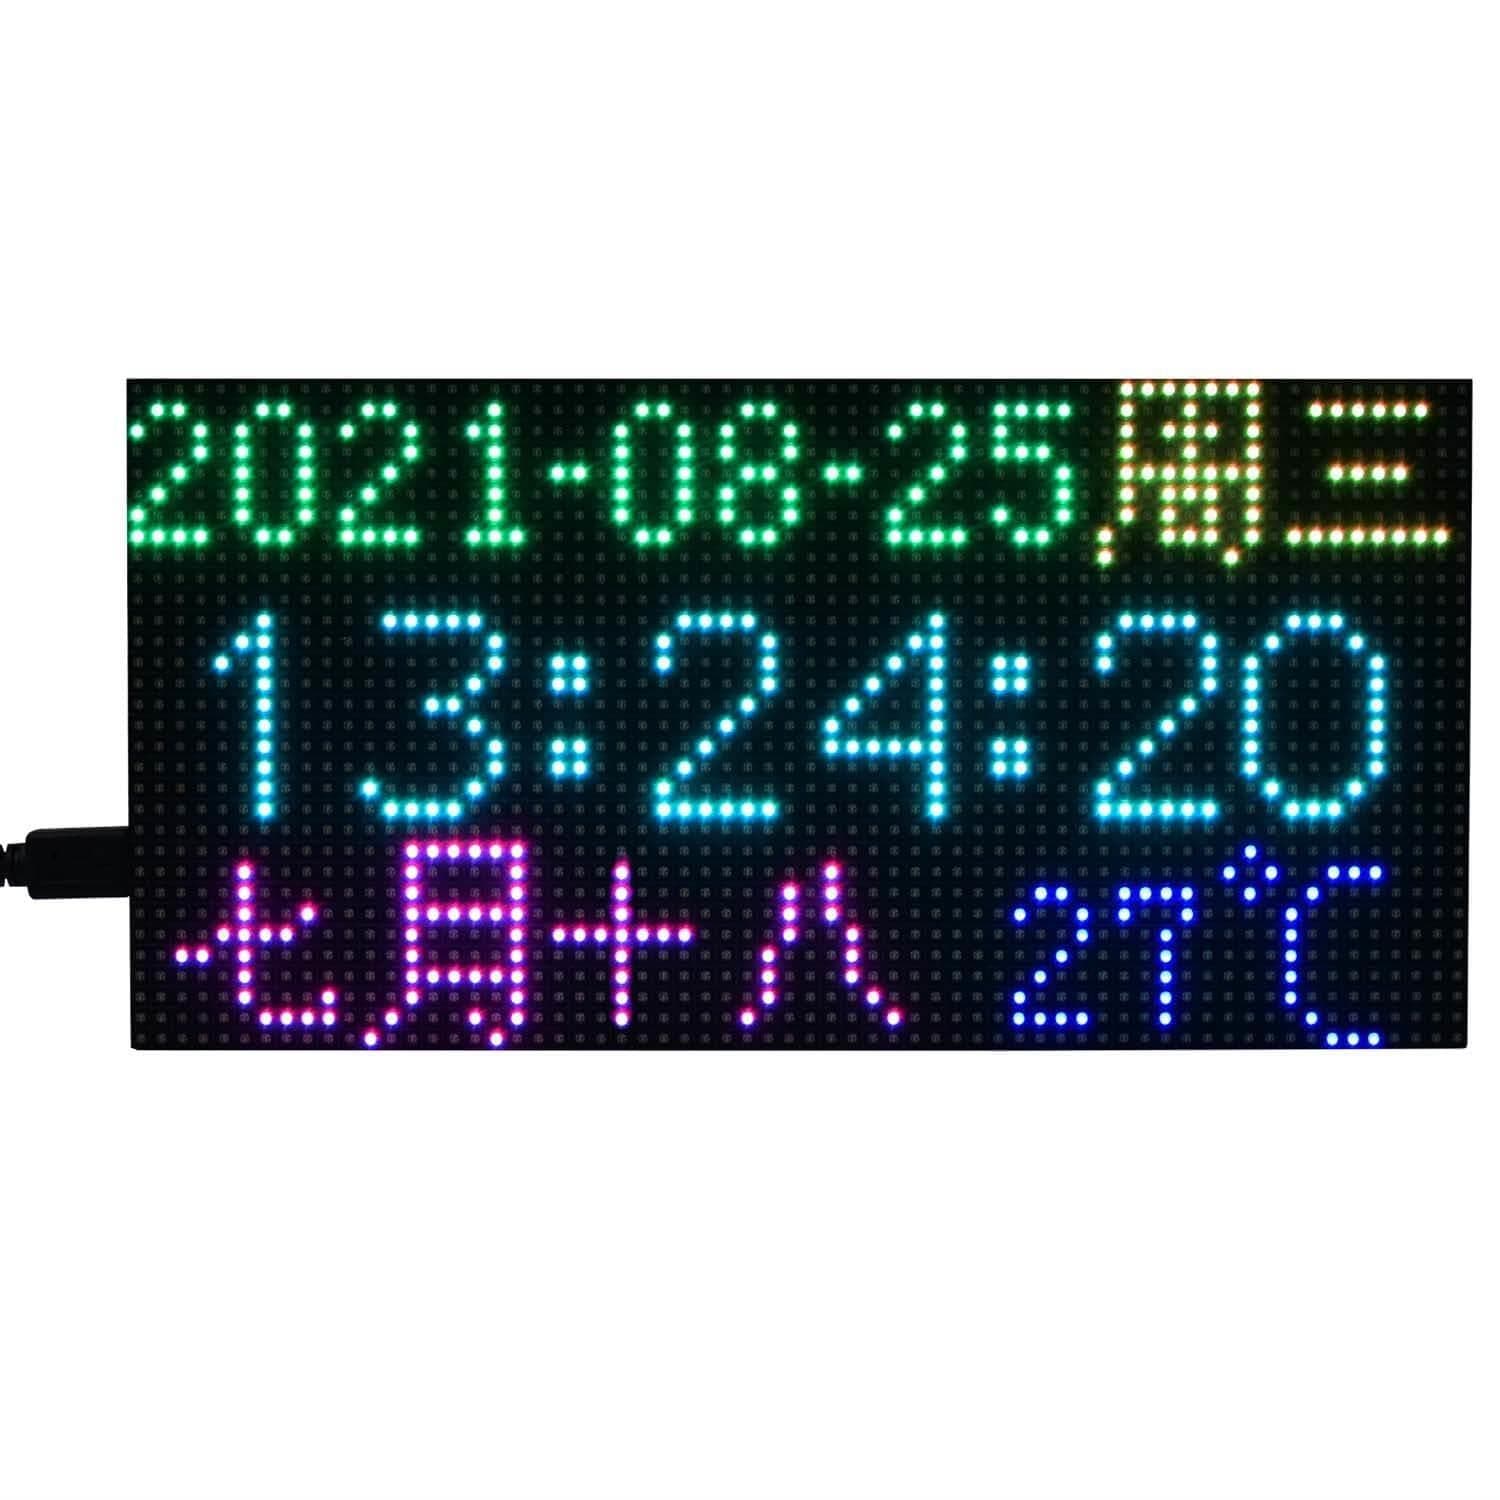 RGB LED Matrix for Raspberry Pi Pico (64x32) - The Pi Hut